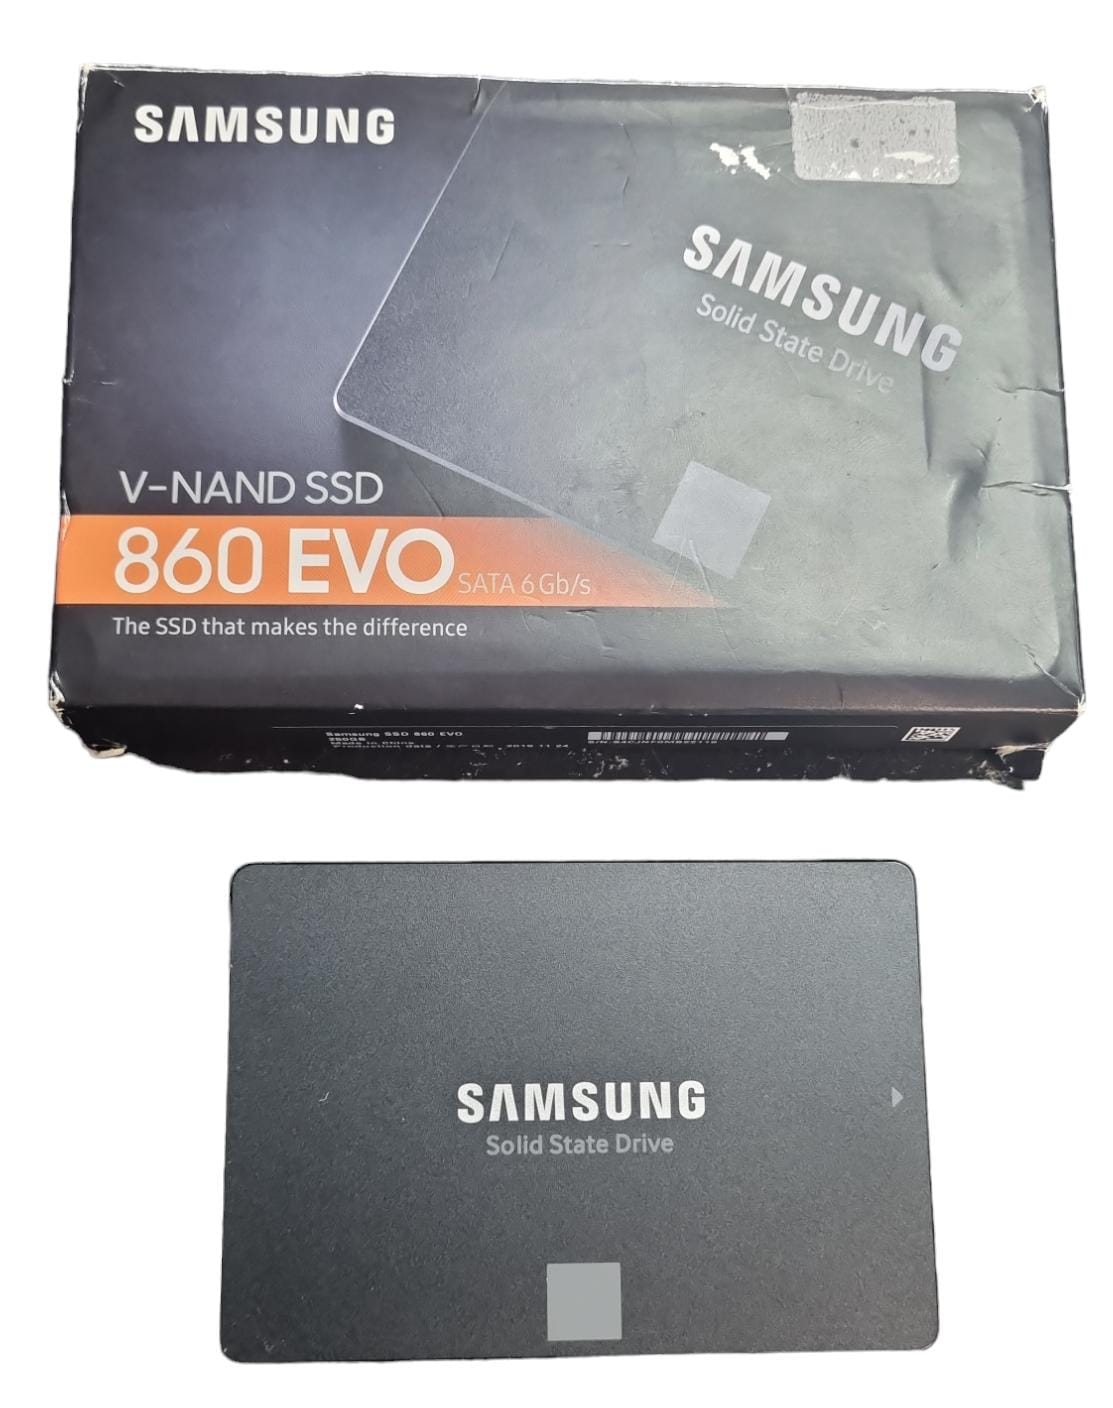 Samsung 860 EVO 250 GB SATA 2.5 Inch Internal Solid State Drive (SSD) (MZ-76E250) Boxed